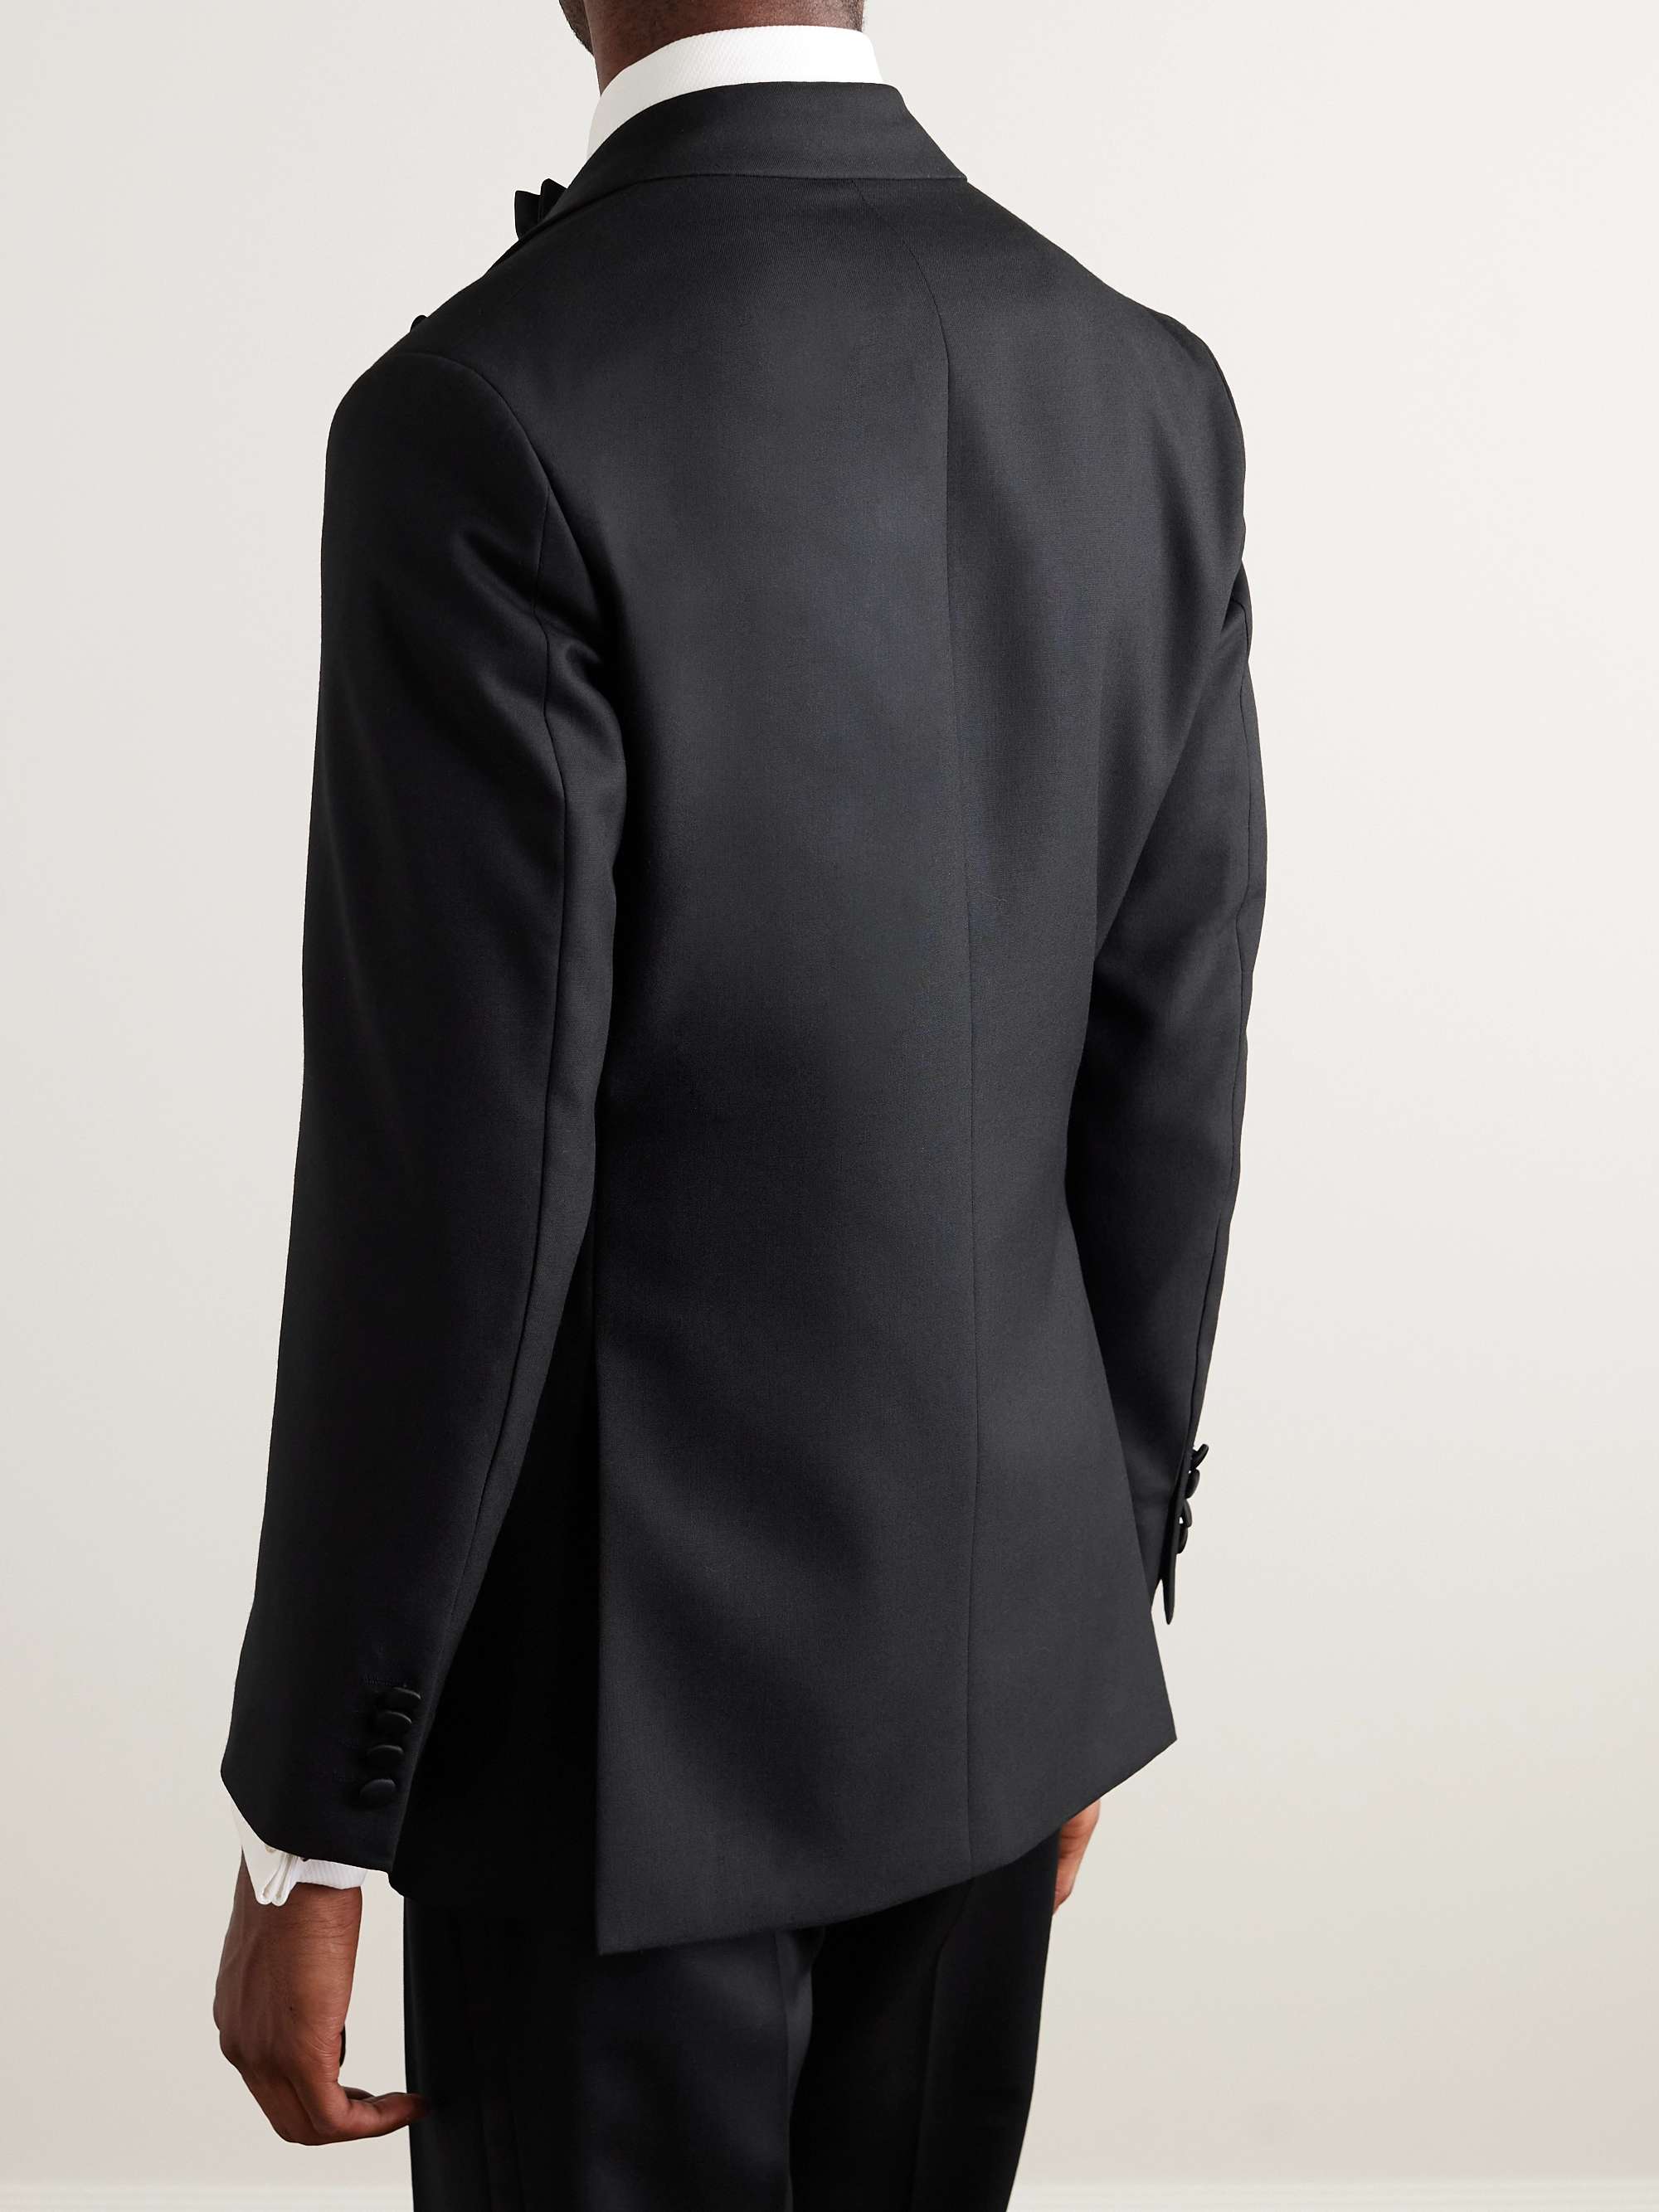 RICHARD JAMES Slim-Fit Wool Tuxedo Jacket for Men | MR PORTER